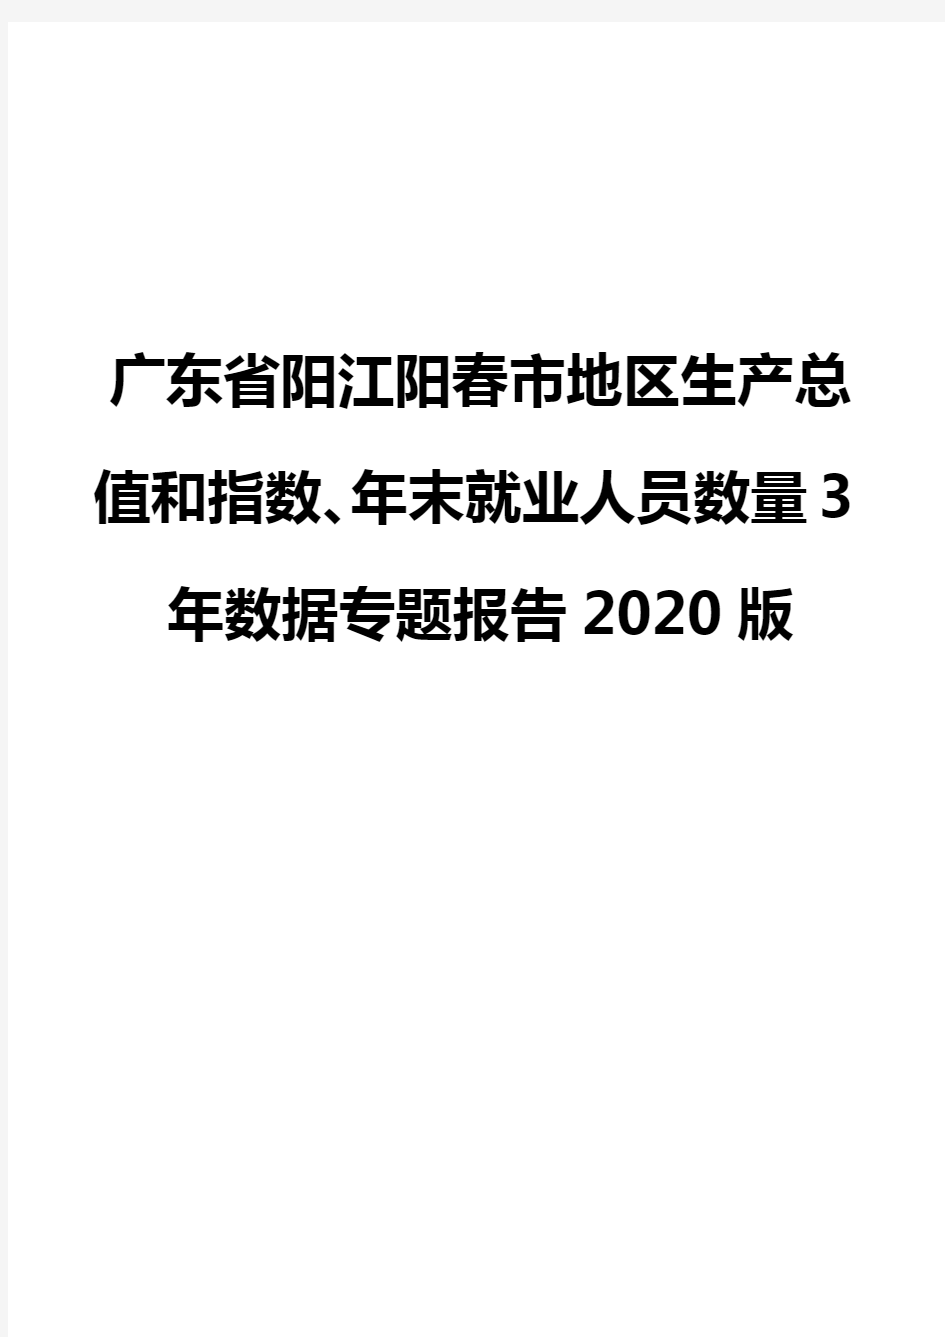 广东省阳江阳春市地区生产总值和指数、年末就业人员数量3年数据专题报告2020版